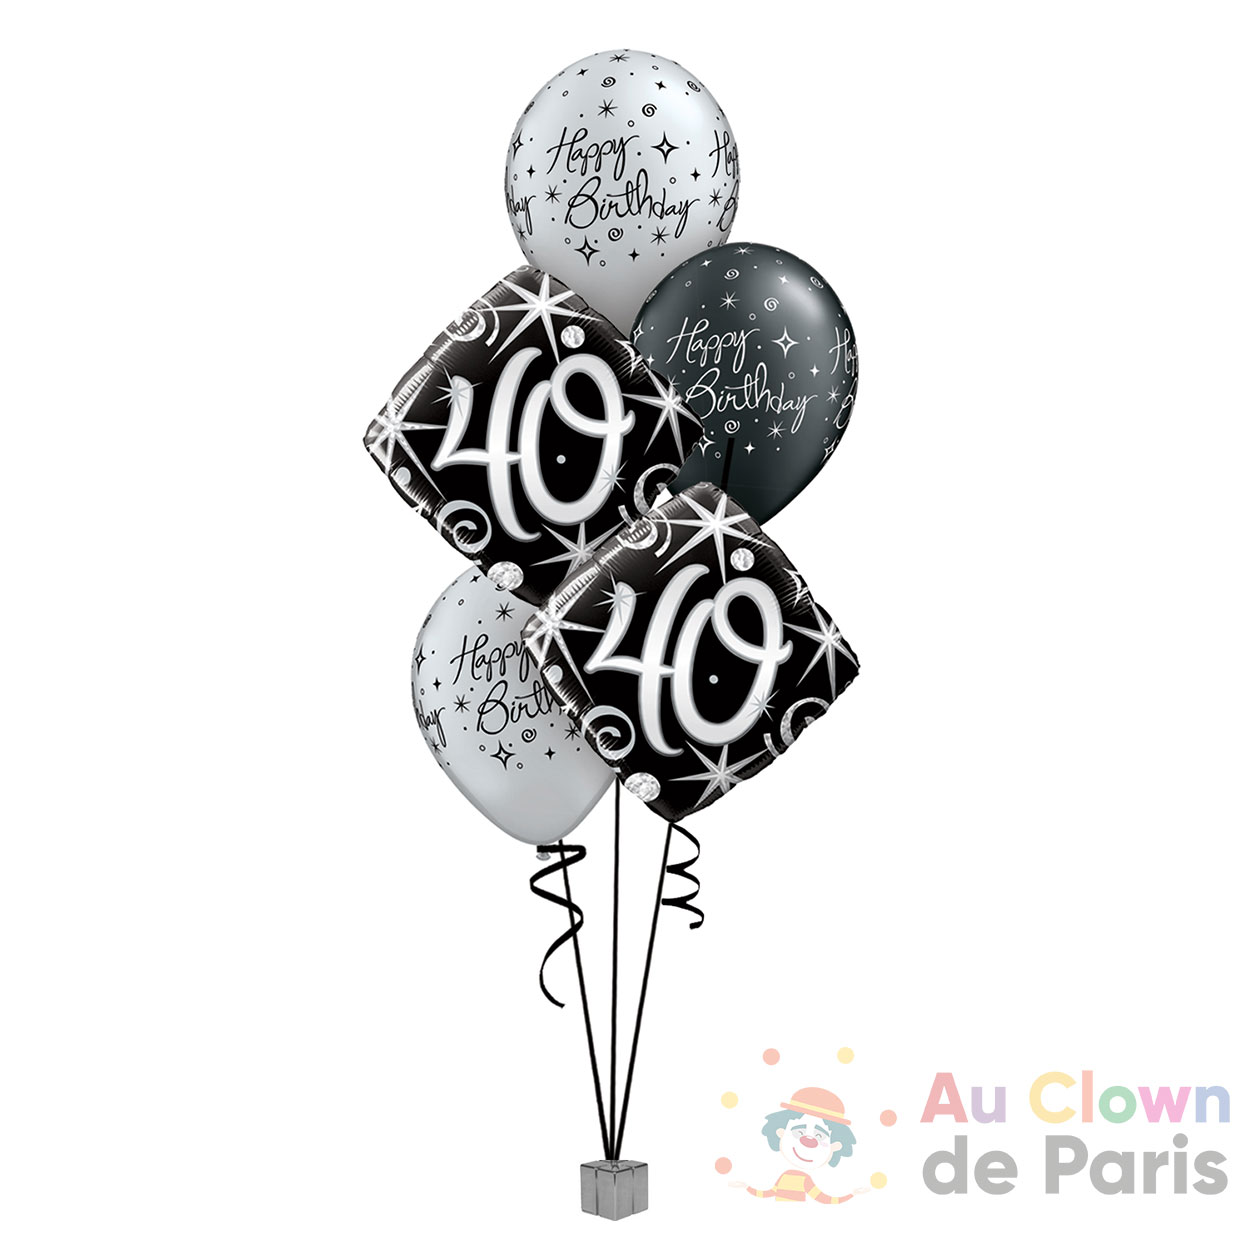 40 Ans Anniversaire Decoration Ballon Femme, Anniversaire 40 Ans